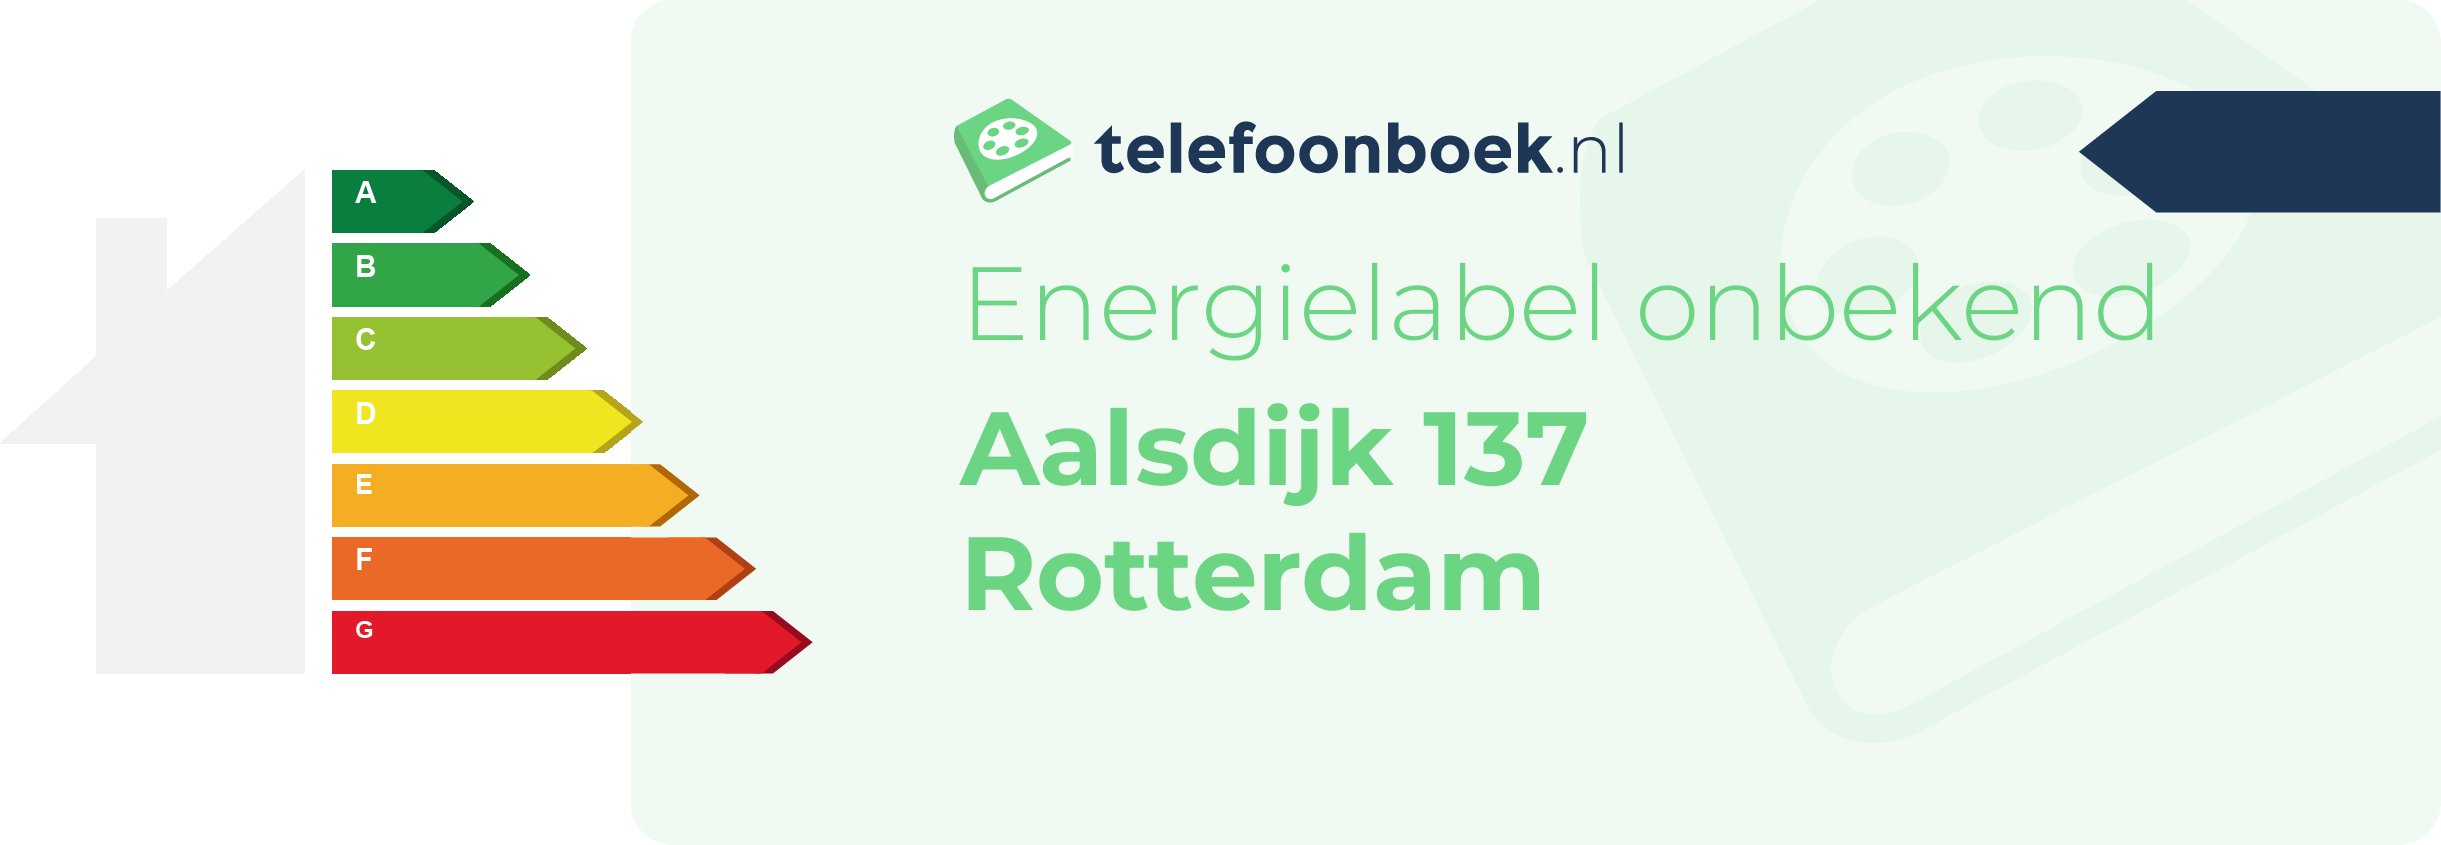 Energielabel Aalsdijk 137 Rotterdam